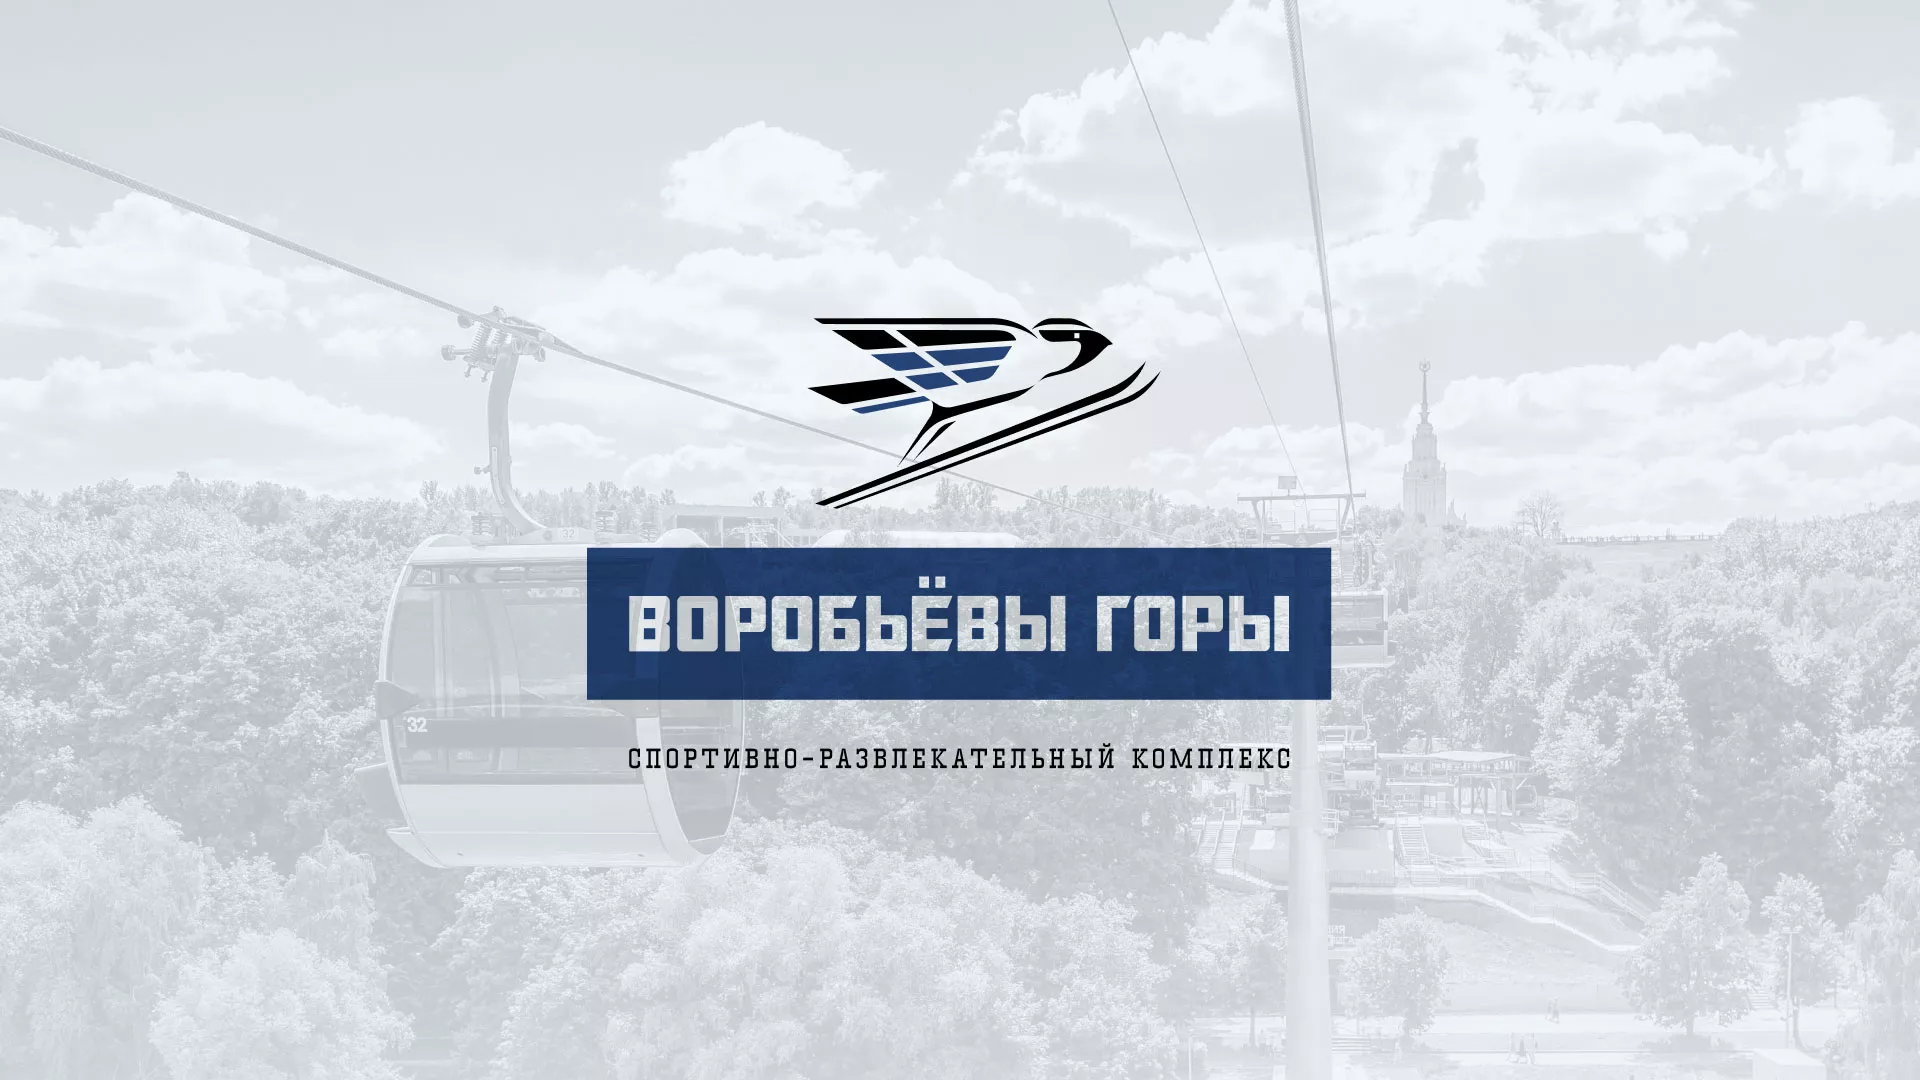 Разработка сайта в Алексеевке для спортивно-развлекательного комплекса «Воробьёвы горы»